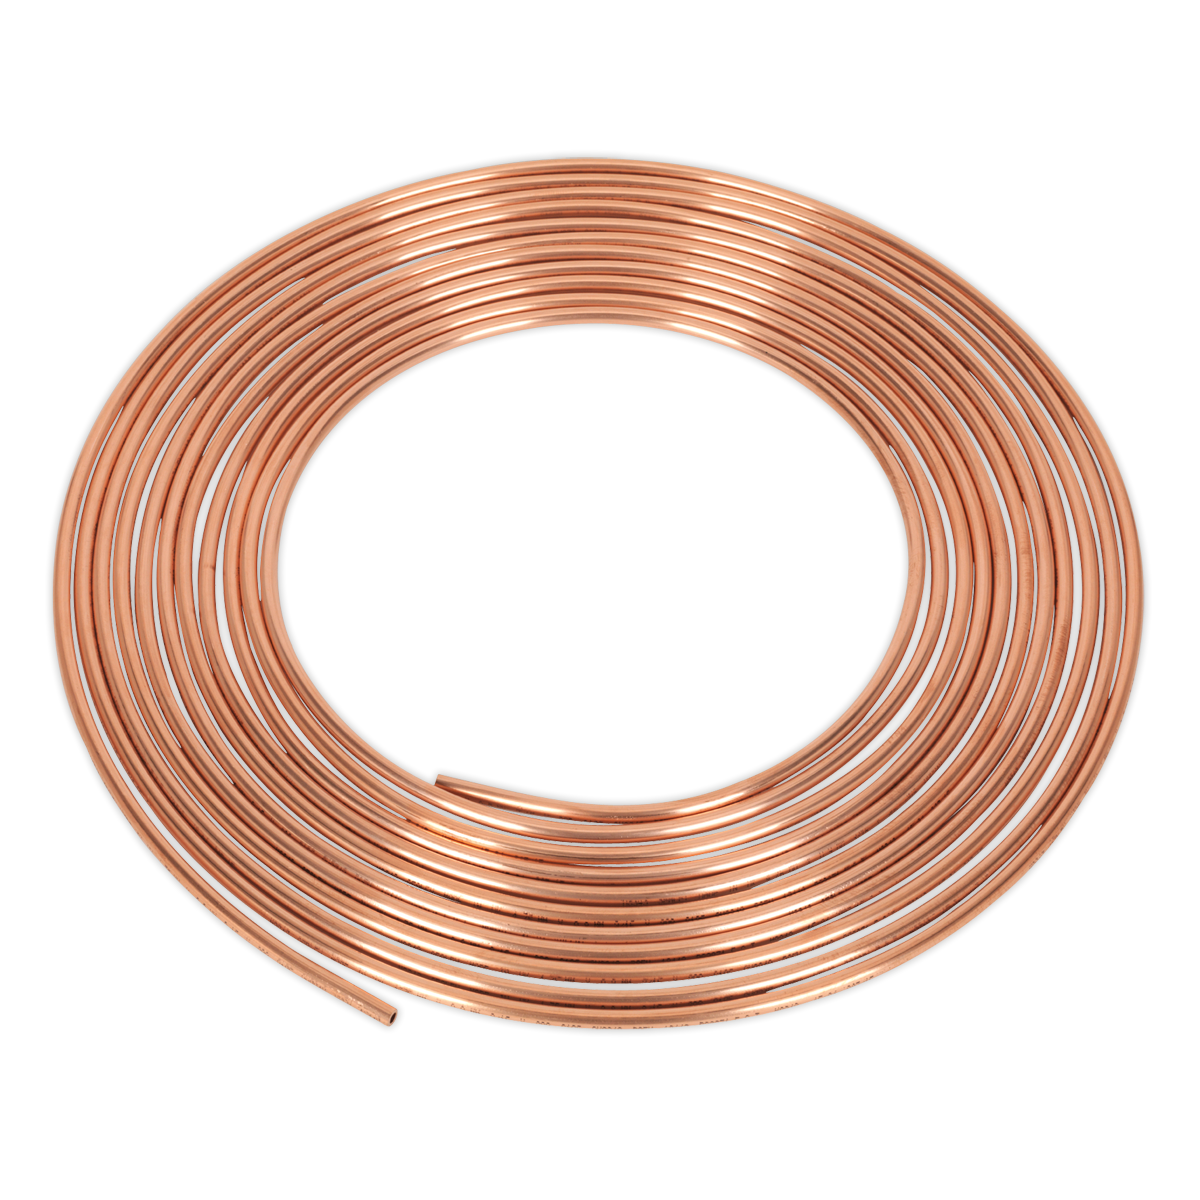 Sealey-Sealey-CBP002-Brake-Pipe-Copper-Tubing-22-Gauge-3/16"-x-25ft-BS-EN-12449-C106-CBP002